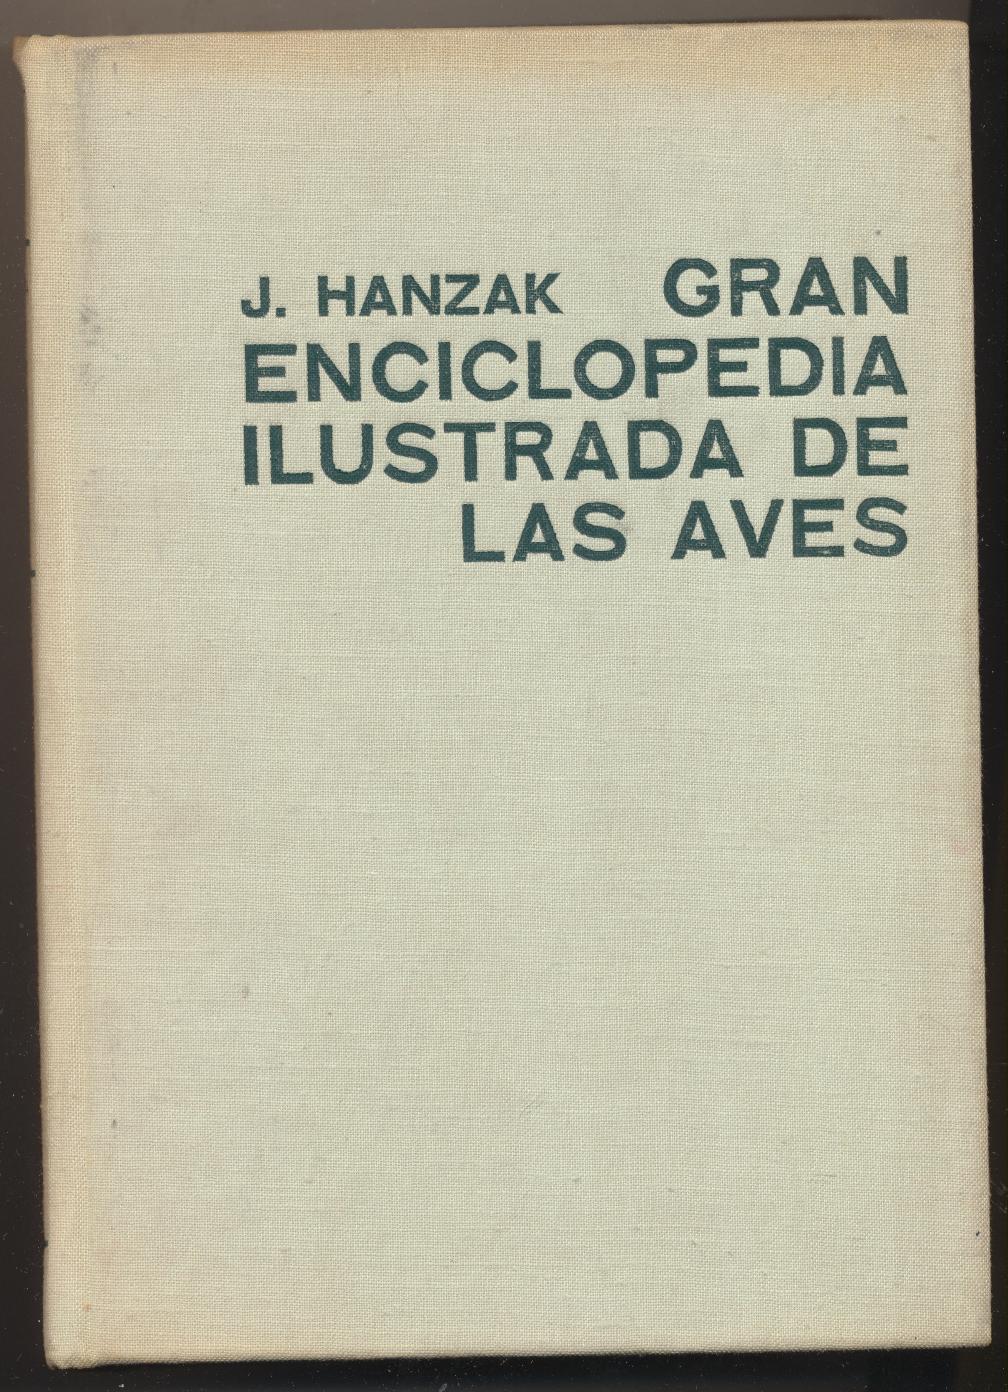 J. Hanzak. Gran Enciclopedia Ilustrada de las Aves. Círculo de Lectores 1971